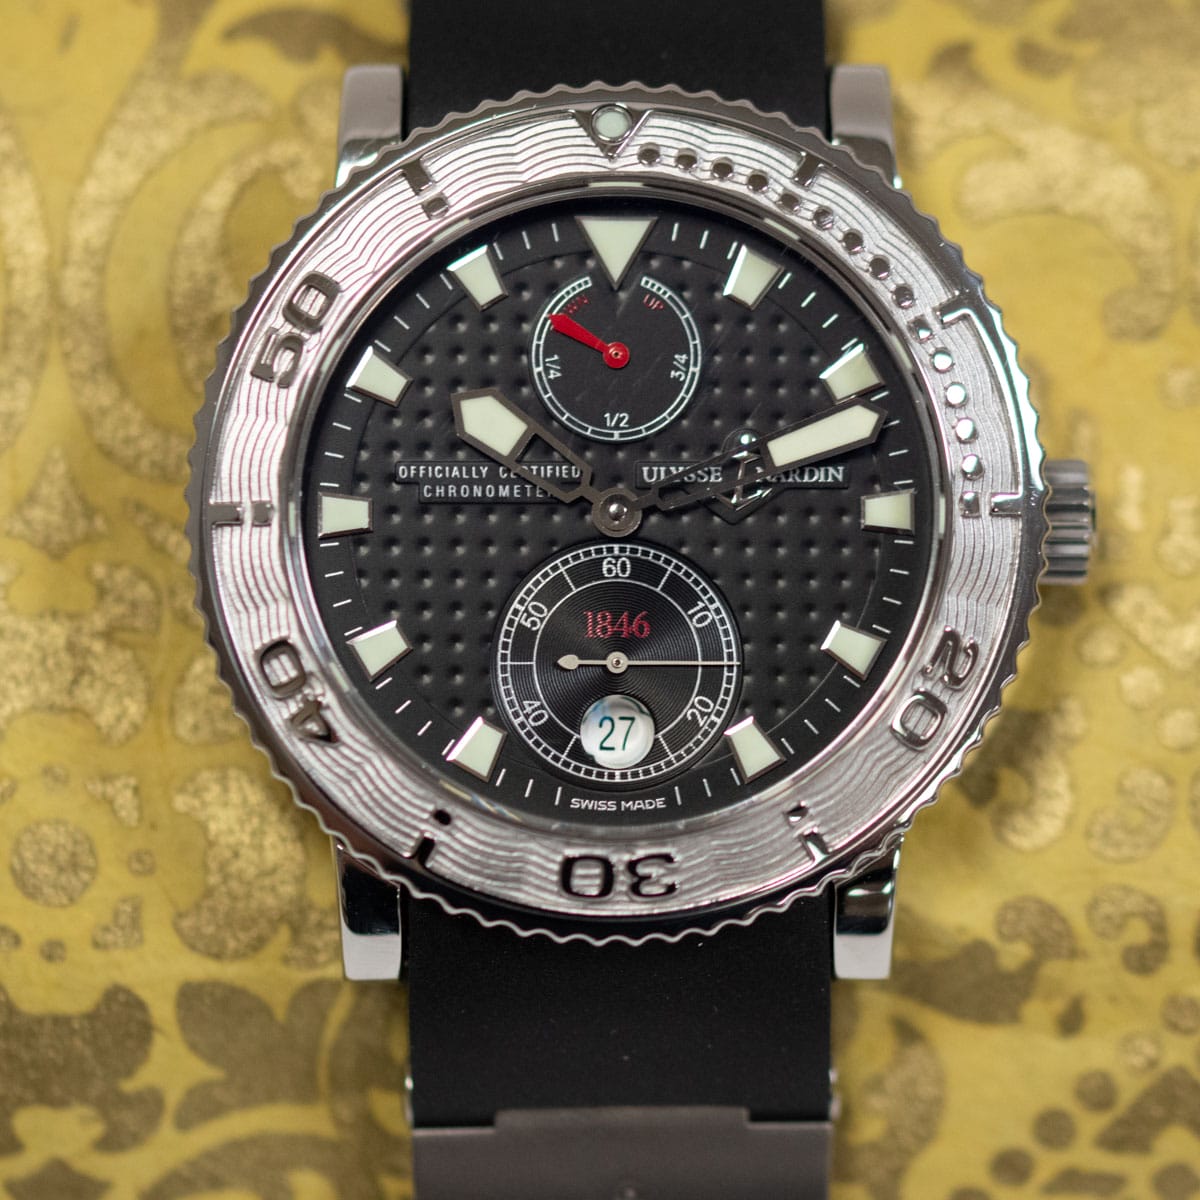 Extra Shot of Marine Diver Chronometer